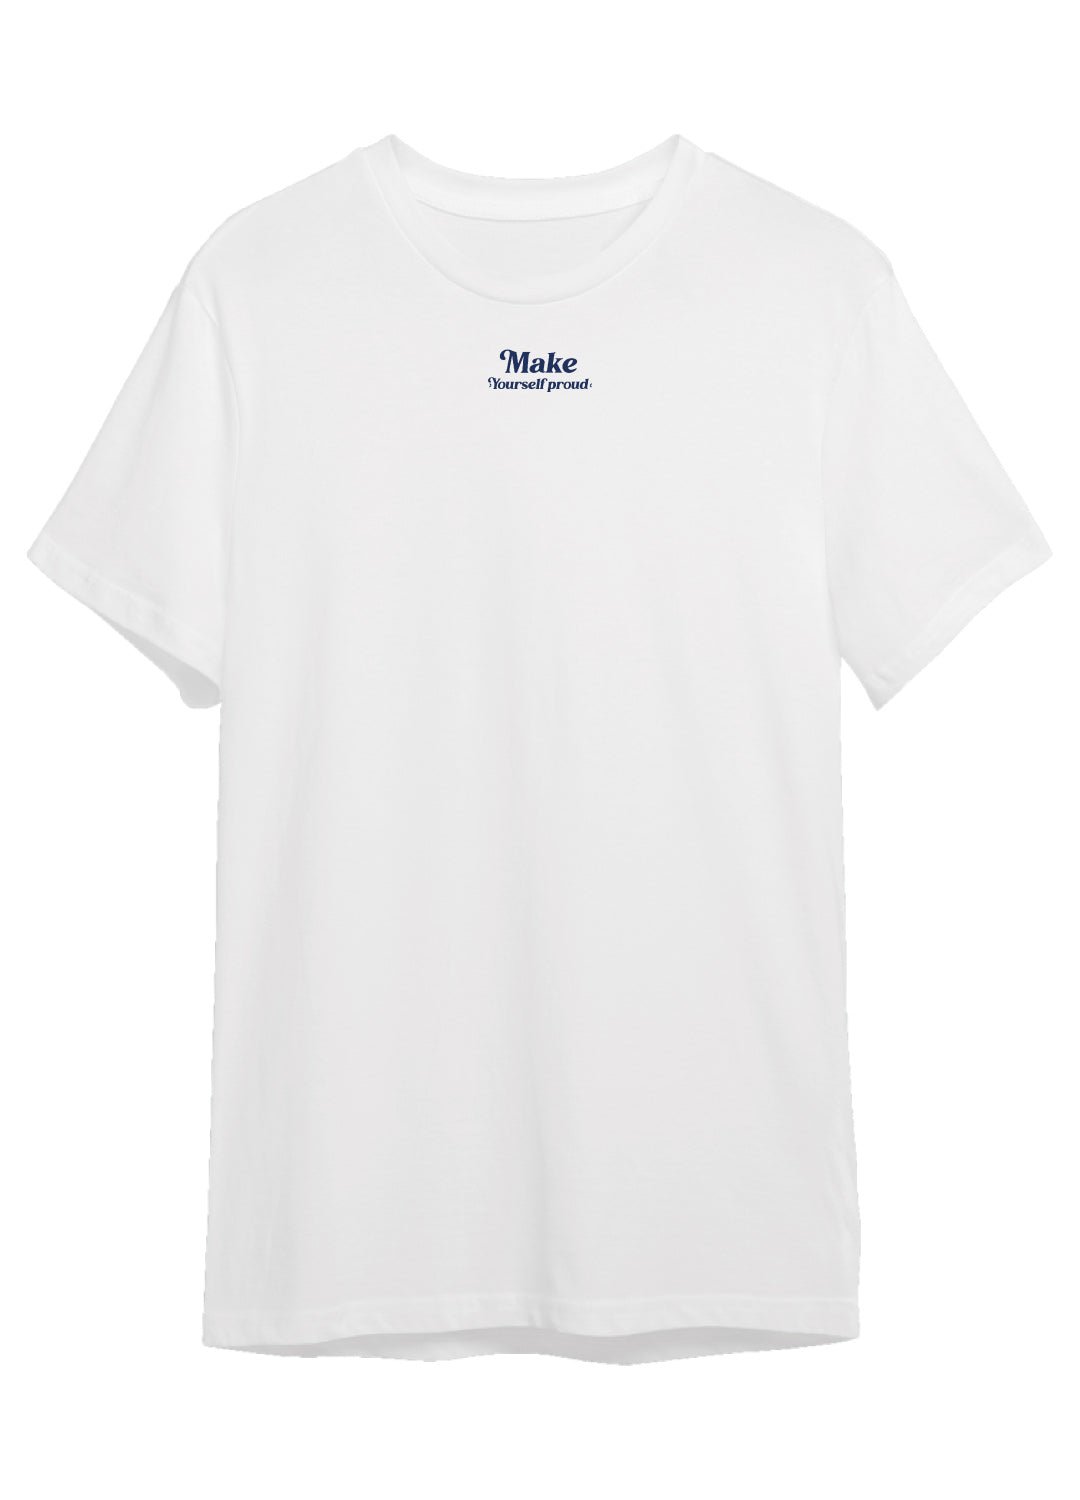 Hazte sentir orgulloso | Camiseta unisex color blanco - Rustiko